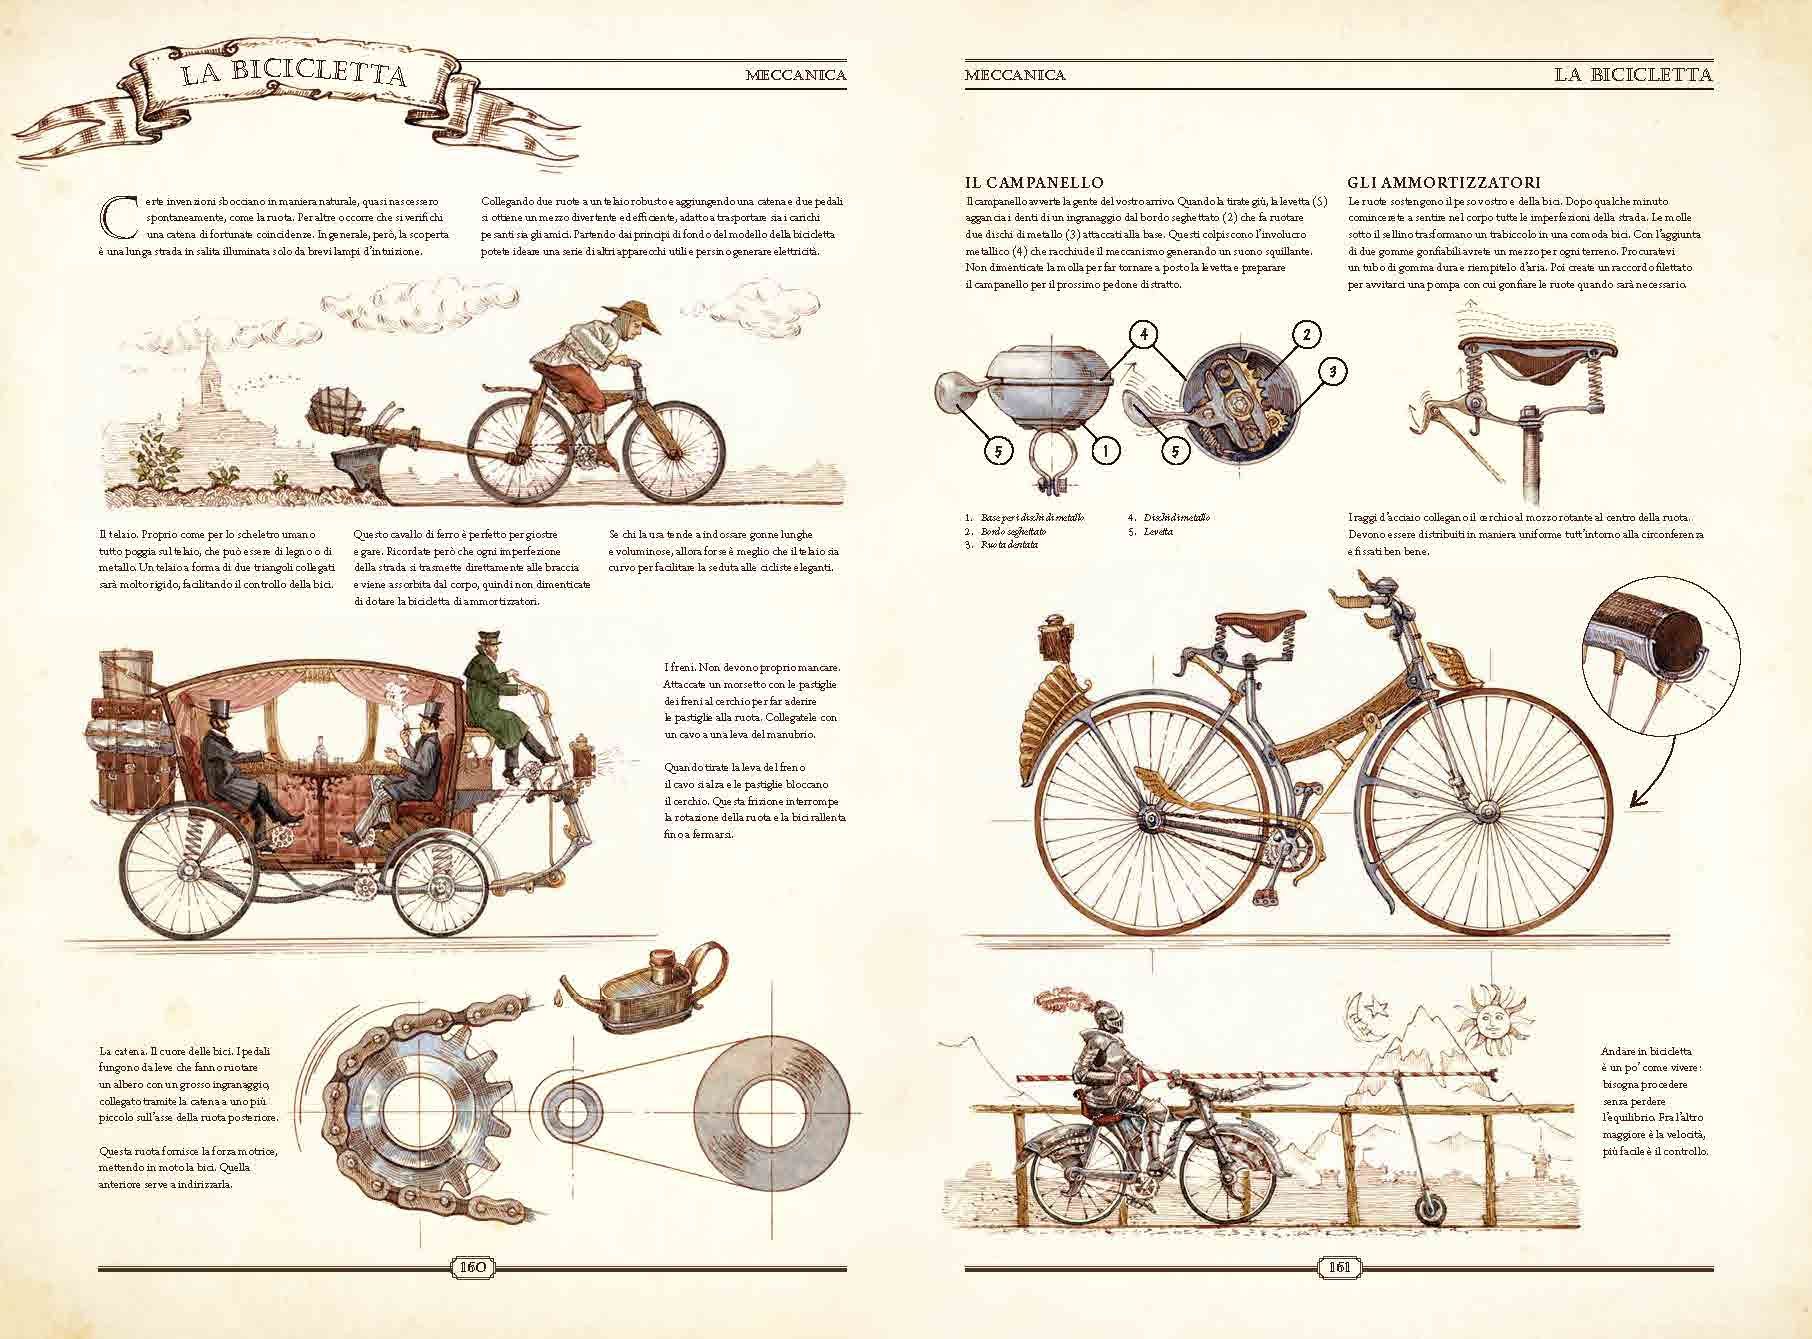 Pagina d'esempio del libro - "La bicicletta"